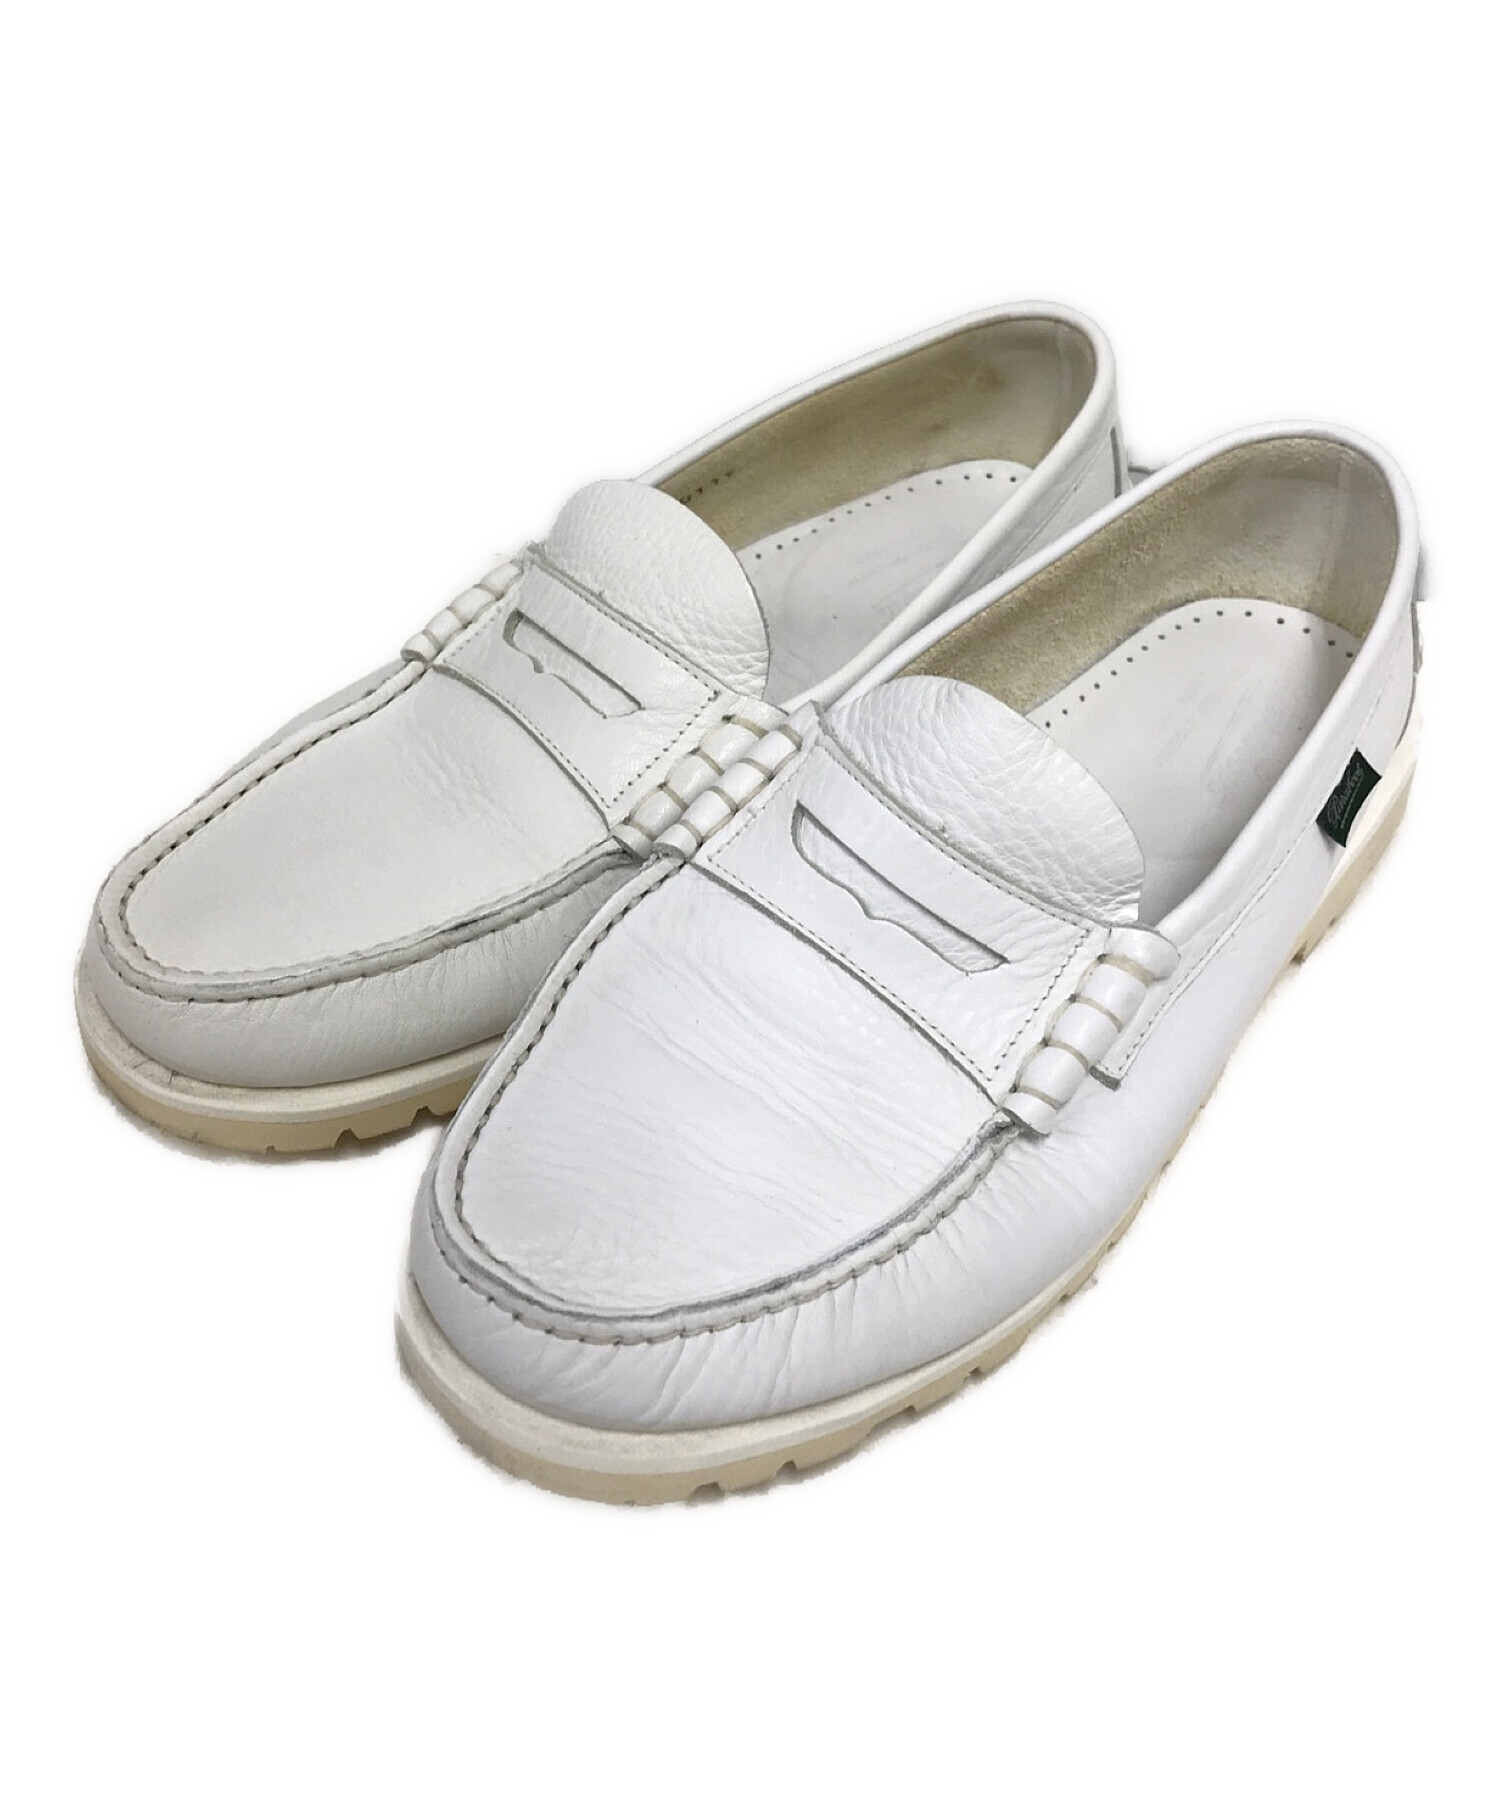 靴/シューズパラブーツ ホワイトコインローファー - ローファー/革靴